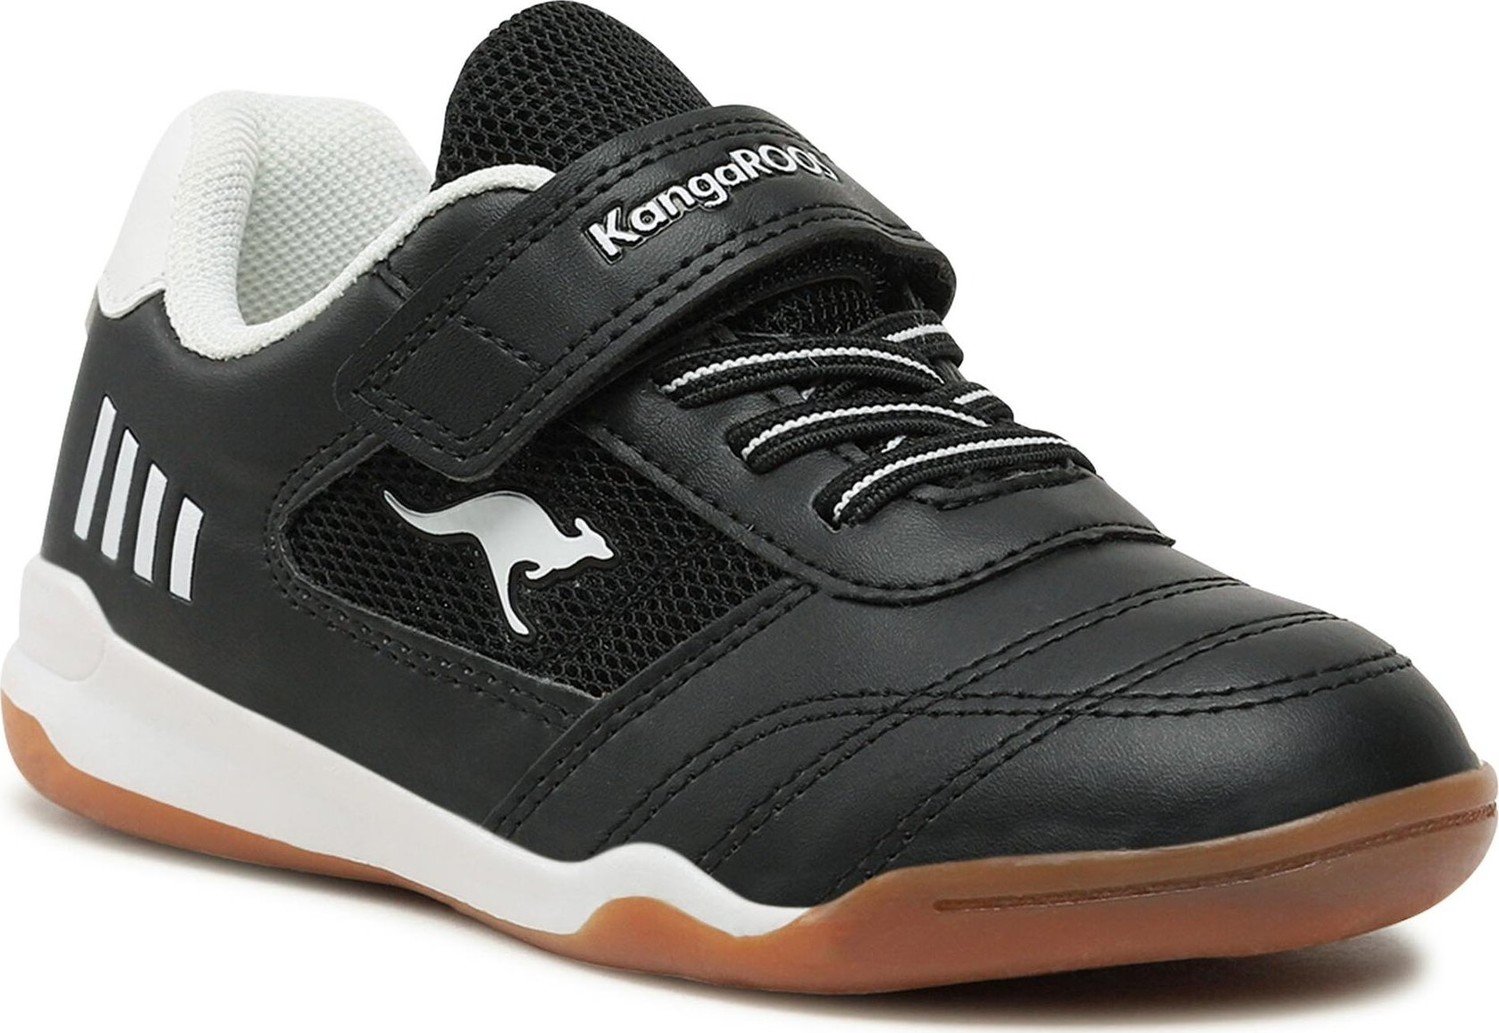 Sneakersy KangaRoos K-Bilyard Ev 10001 000 5012 Jet Black/White